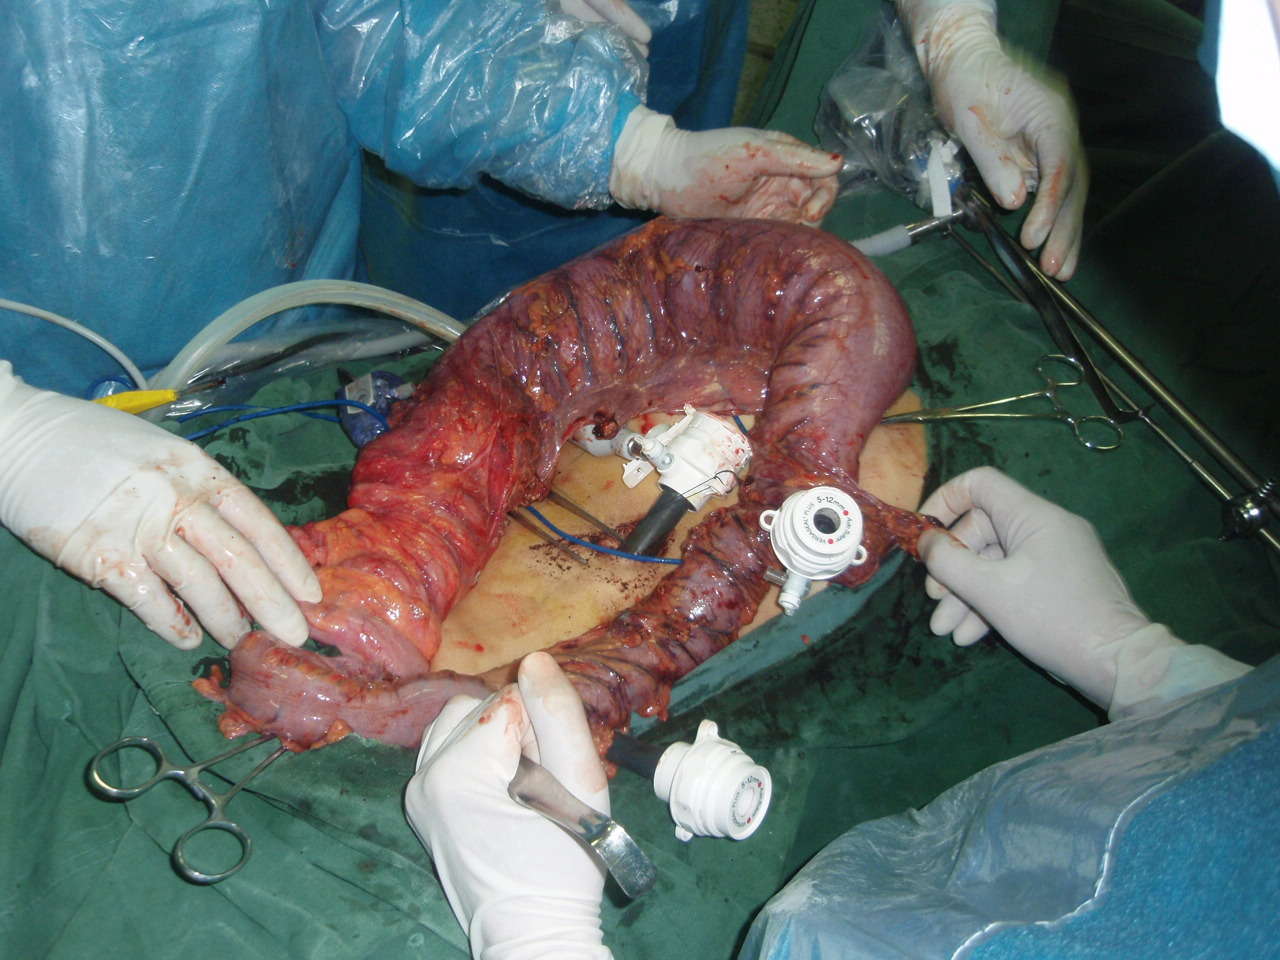 腹腔镜右半结肠体位图片